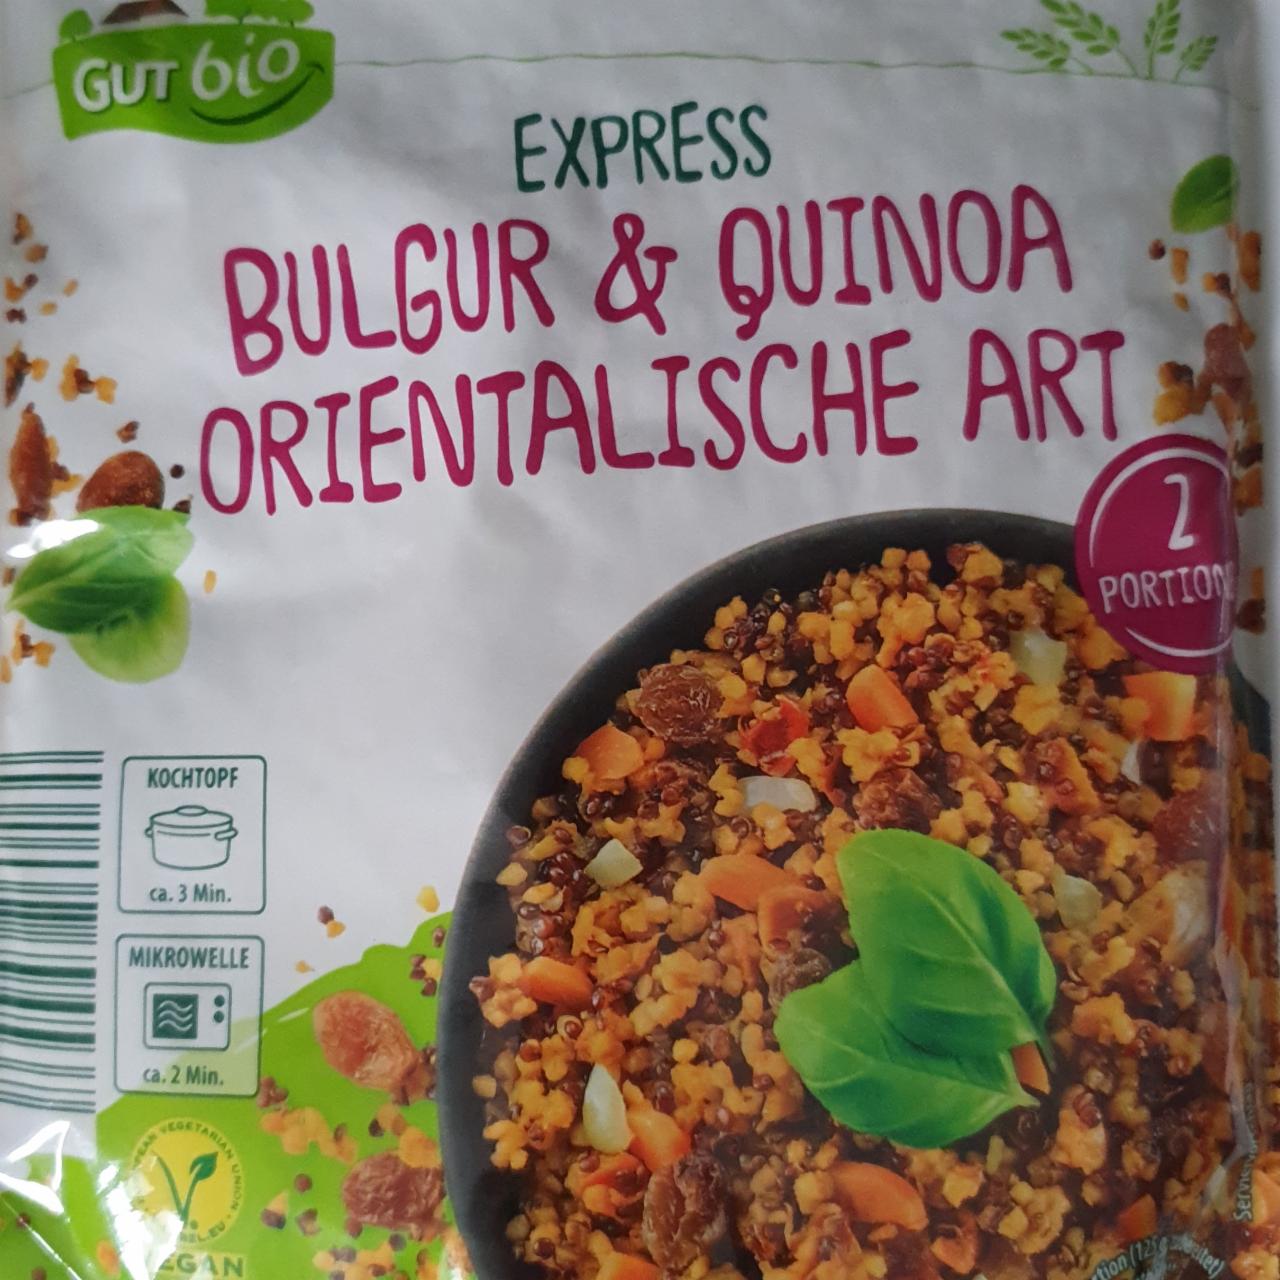 Fotografie - Express Bulgur & Quinoa Orientalische Art GutBio